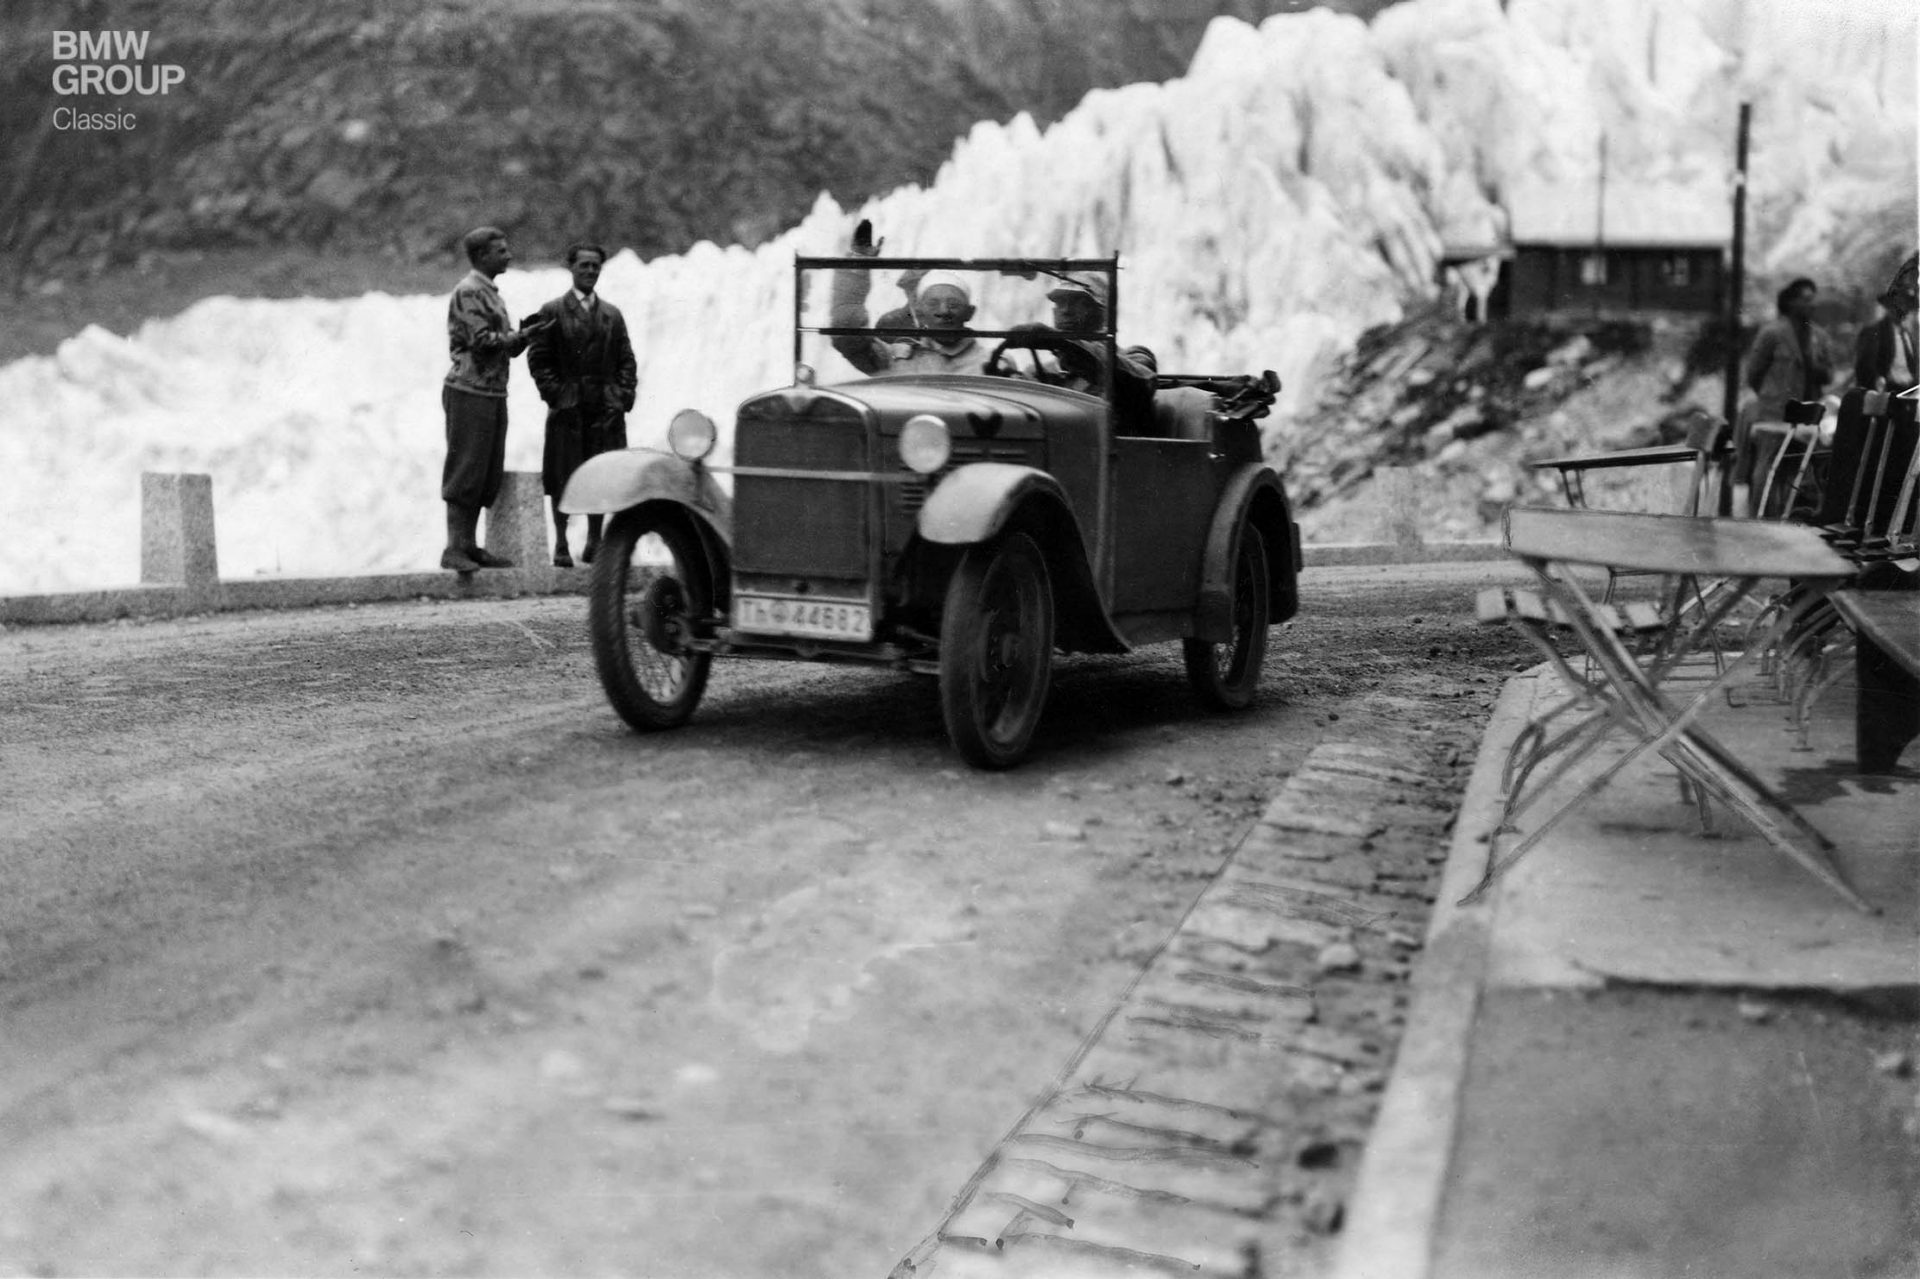 Der BMW 3/15 war klein, leicht und zuverlässig. Perfekt für enge, steile Alpenpässe wie hier bei der II. Internationalen Alpenfahrt 1929.